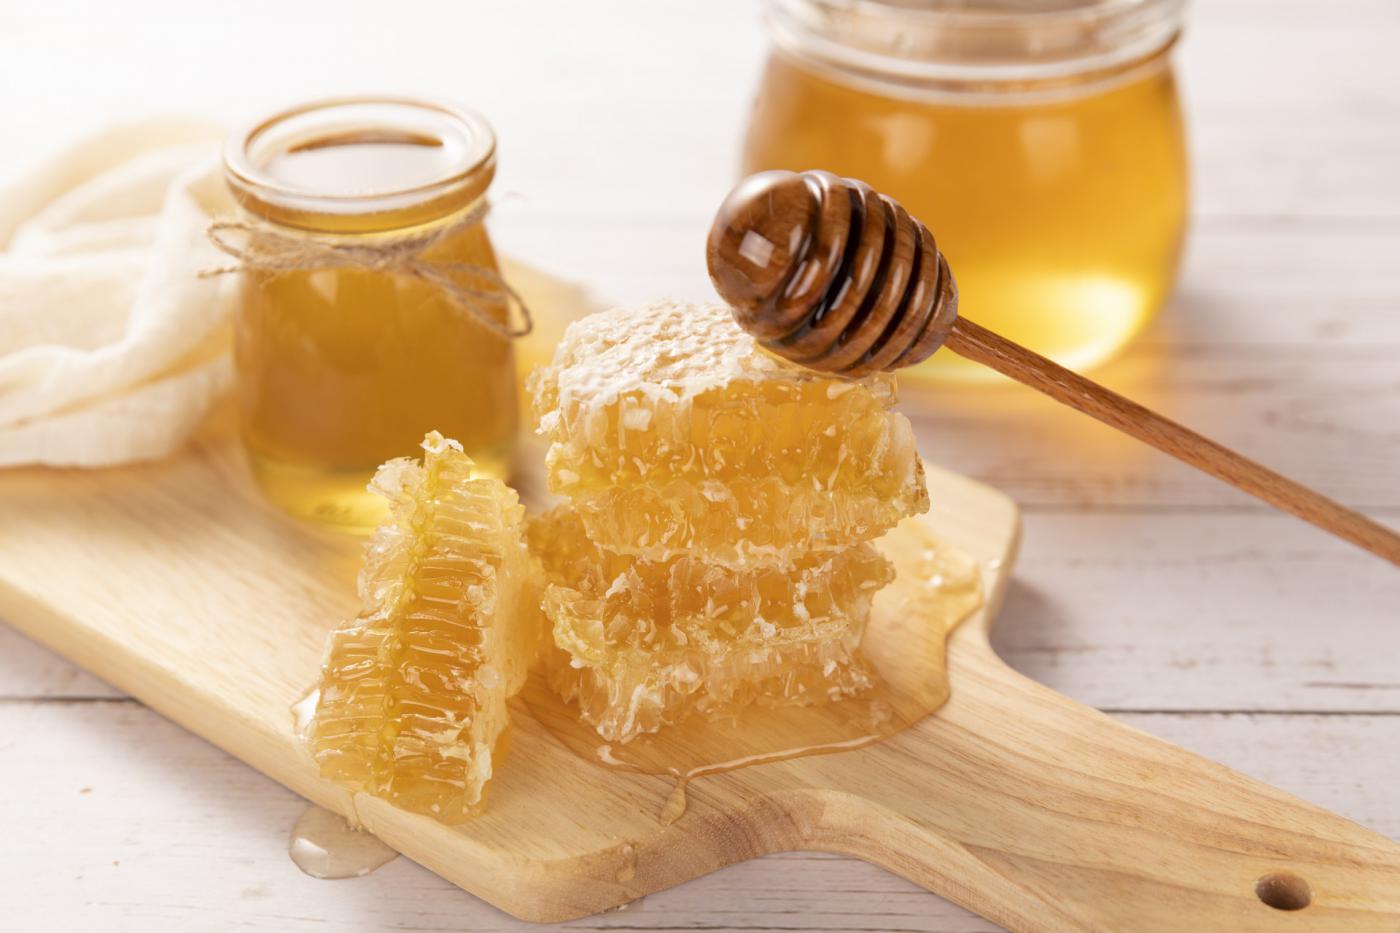 许昌蜂蜜制品检测,蜂蜜制品检测费用,蜂蜜制品检测机构,蜂蜜制品检测项目